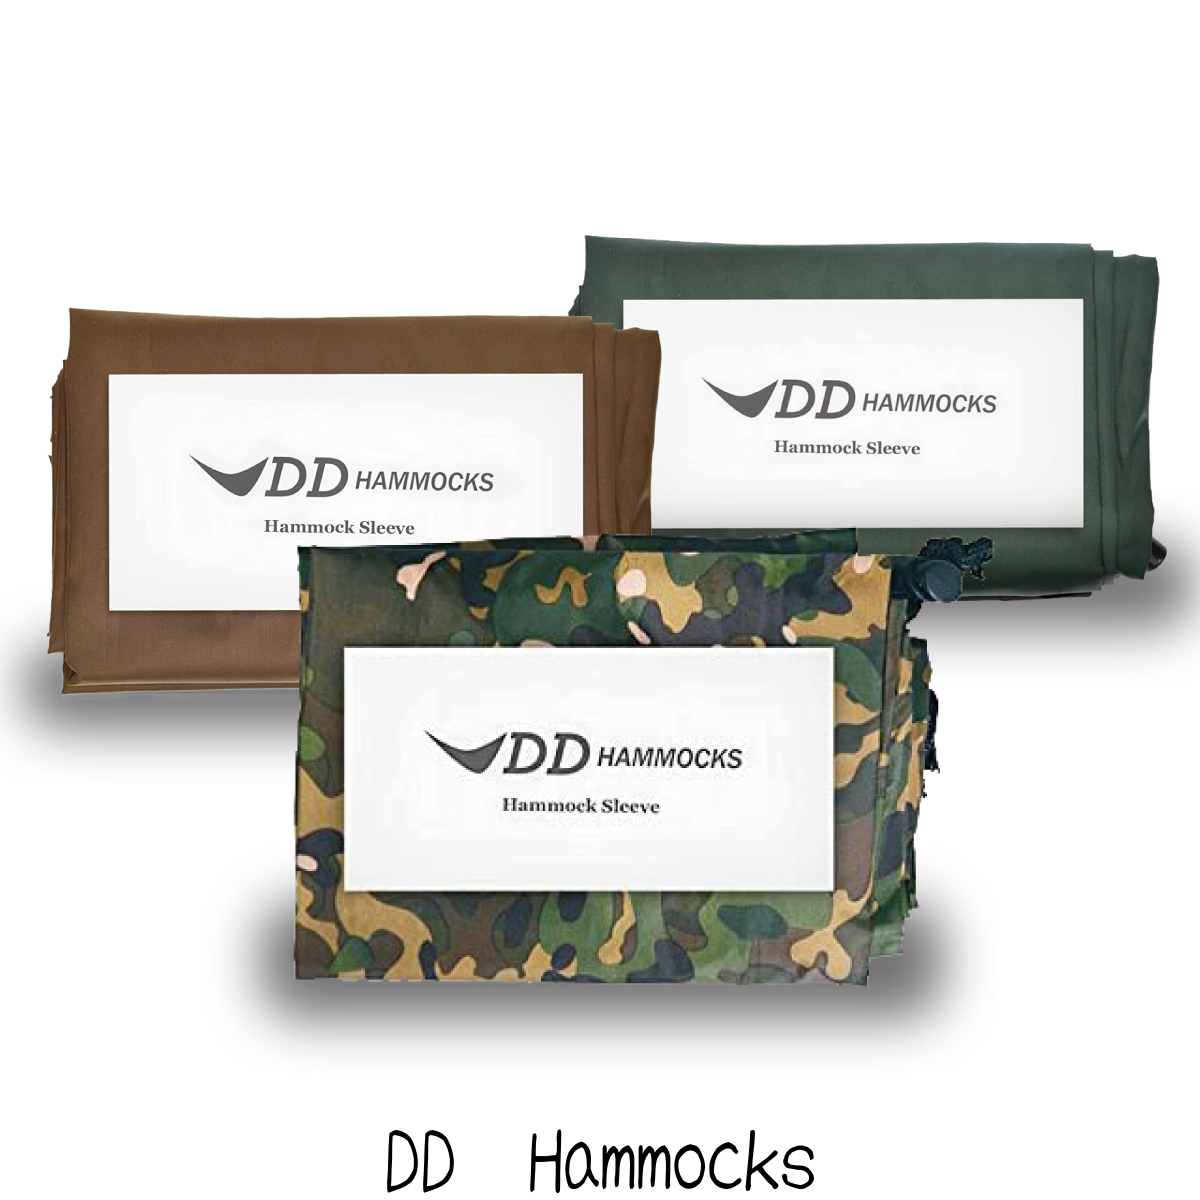 ハンモック収納を簡単にする DD 買い物 Hammock Sleeve ハンモックスリーブ メーカー直輸入品 メーカー直売 ハンモック用アクセサリー